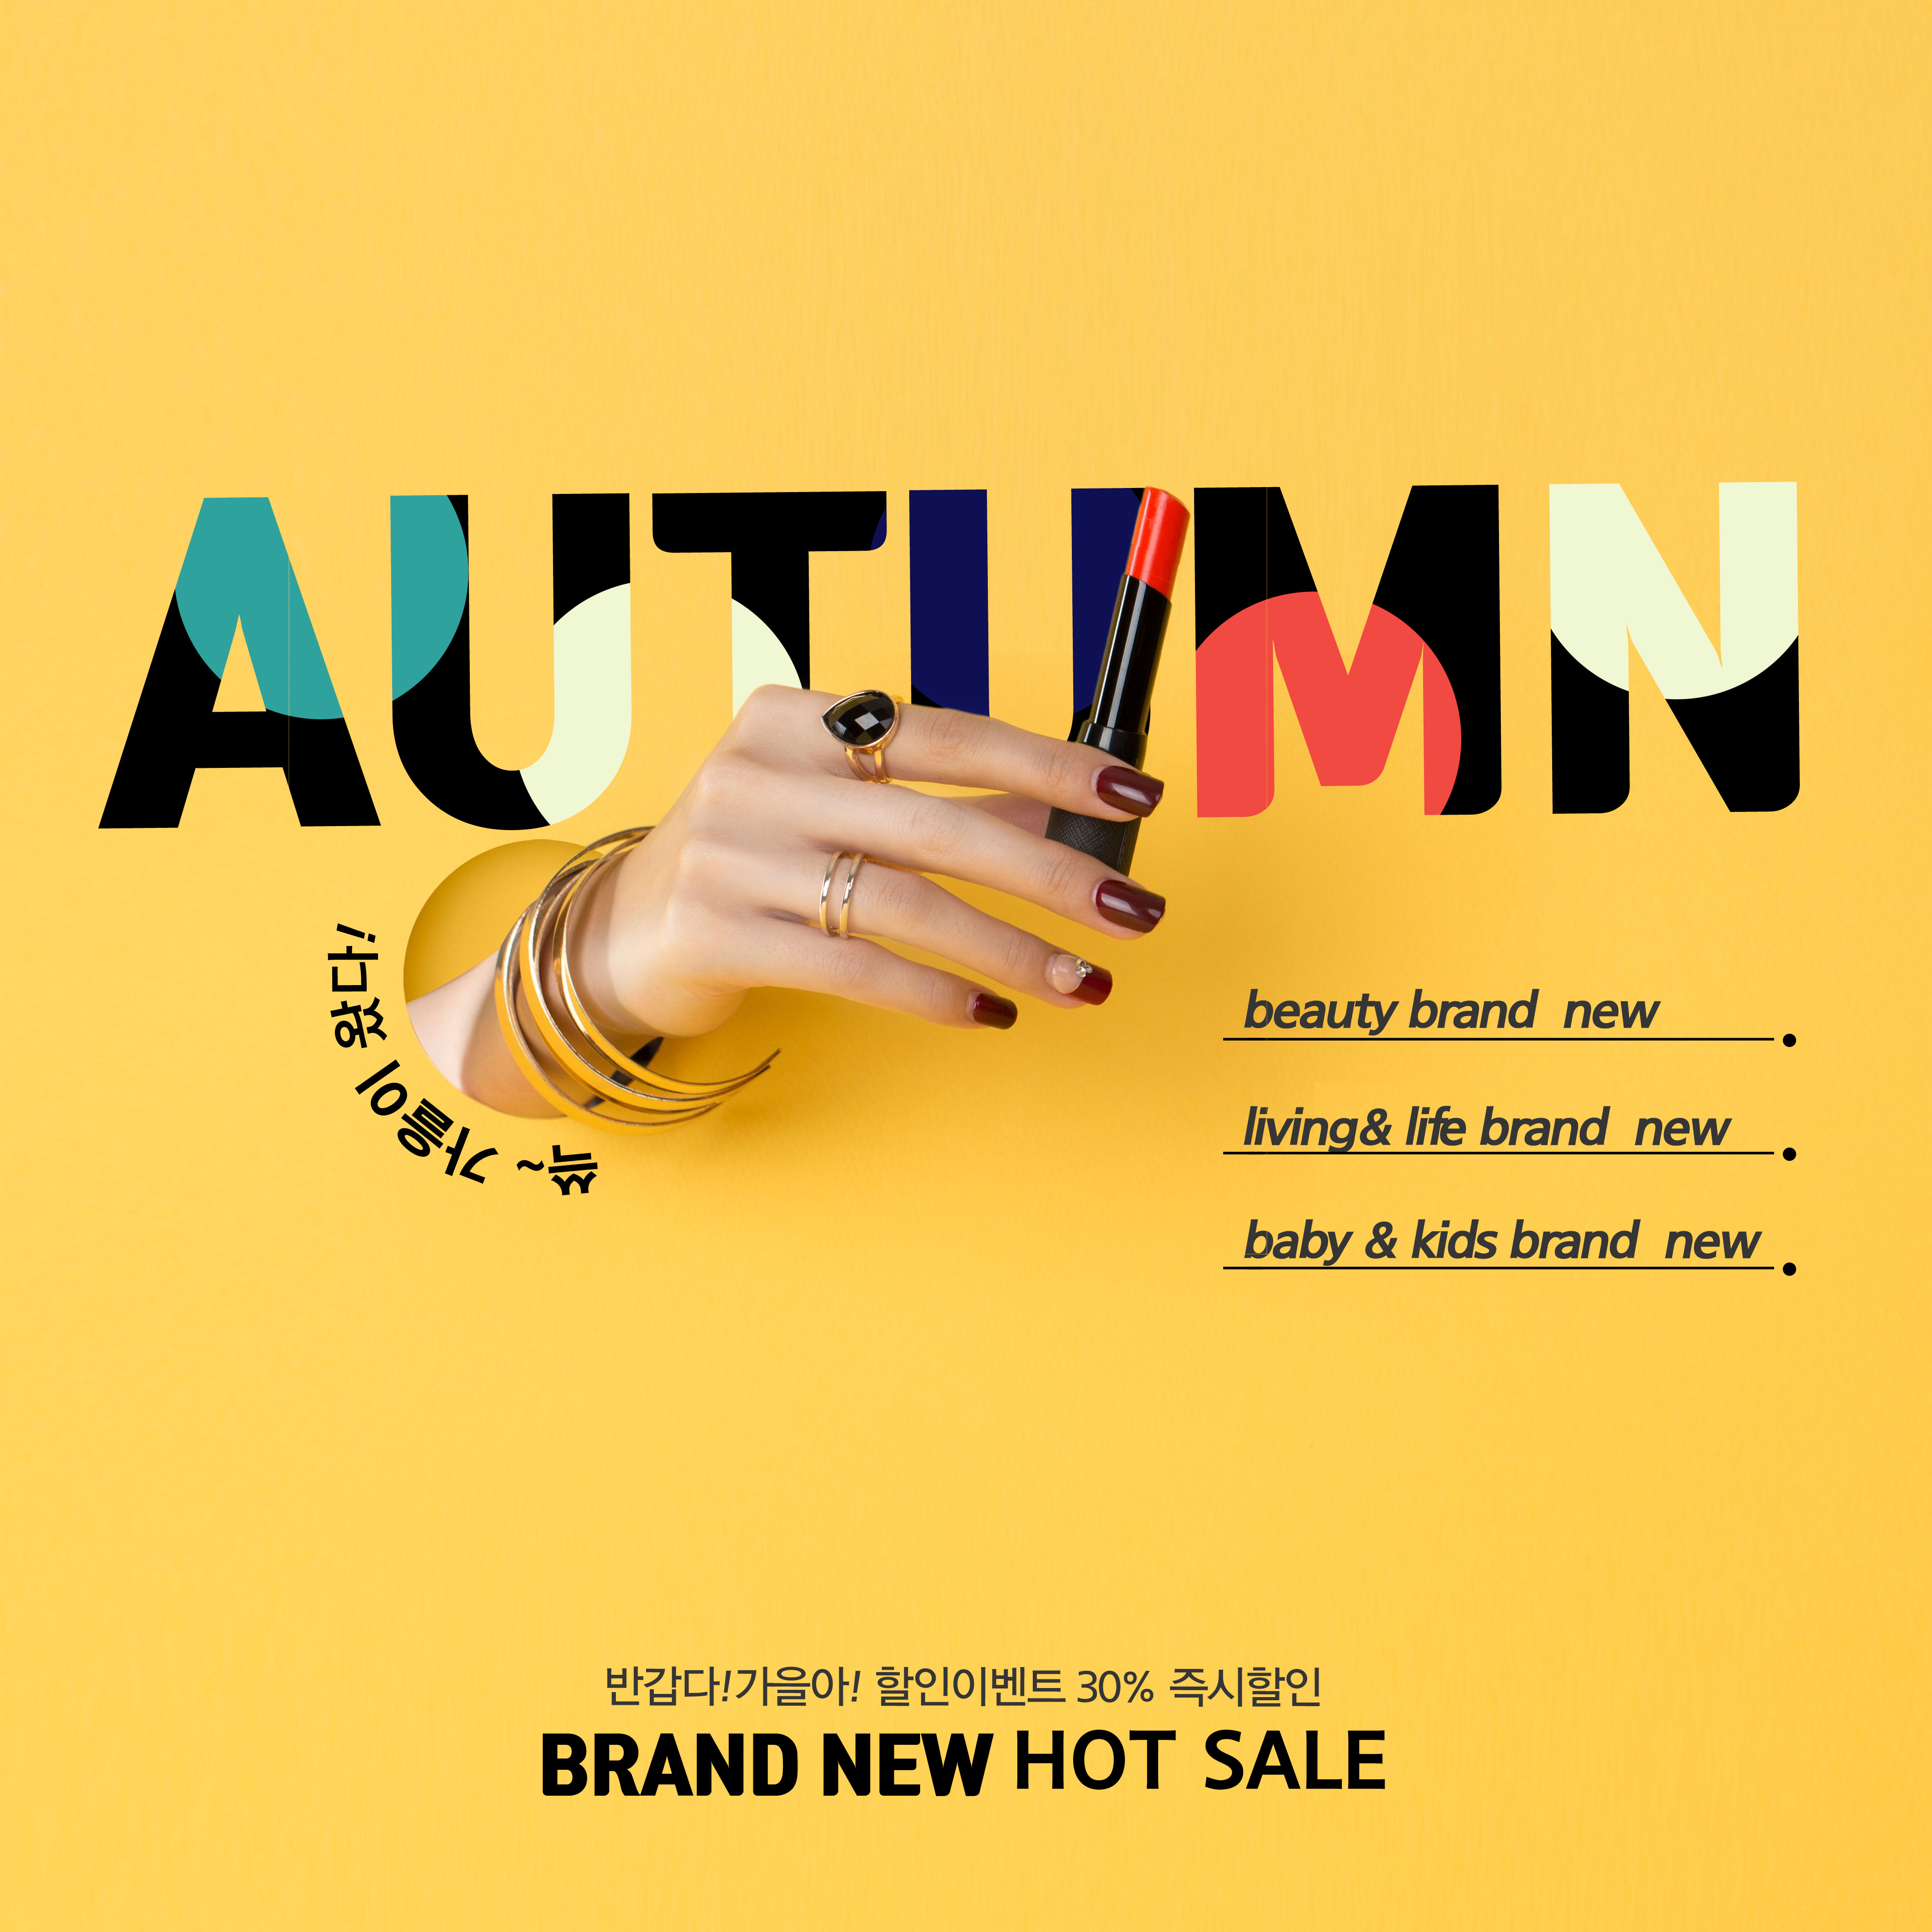 秋季热卖新品促销活动广告电商海报模板插图